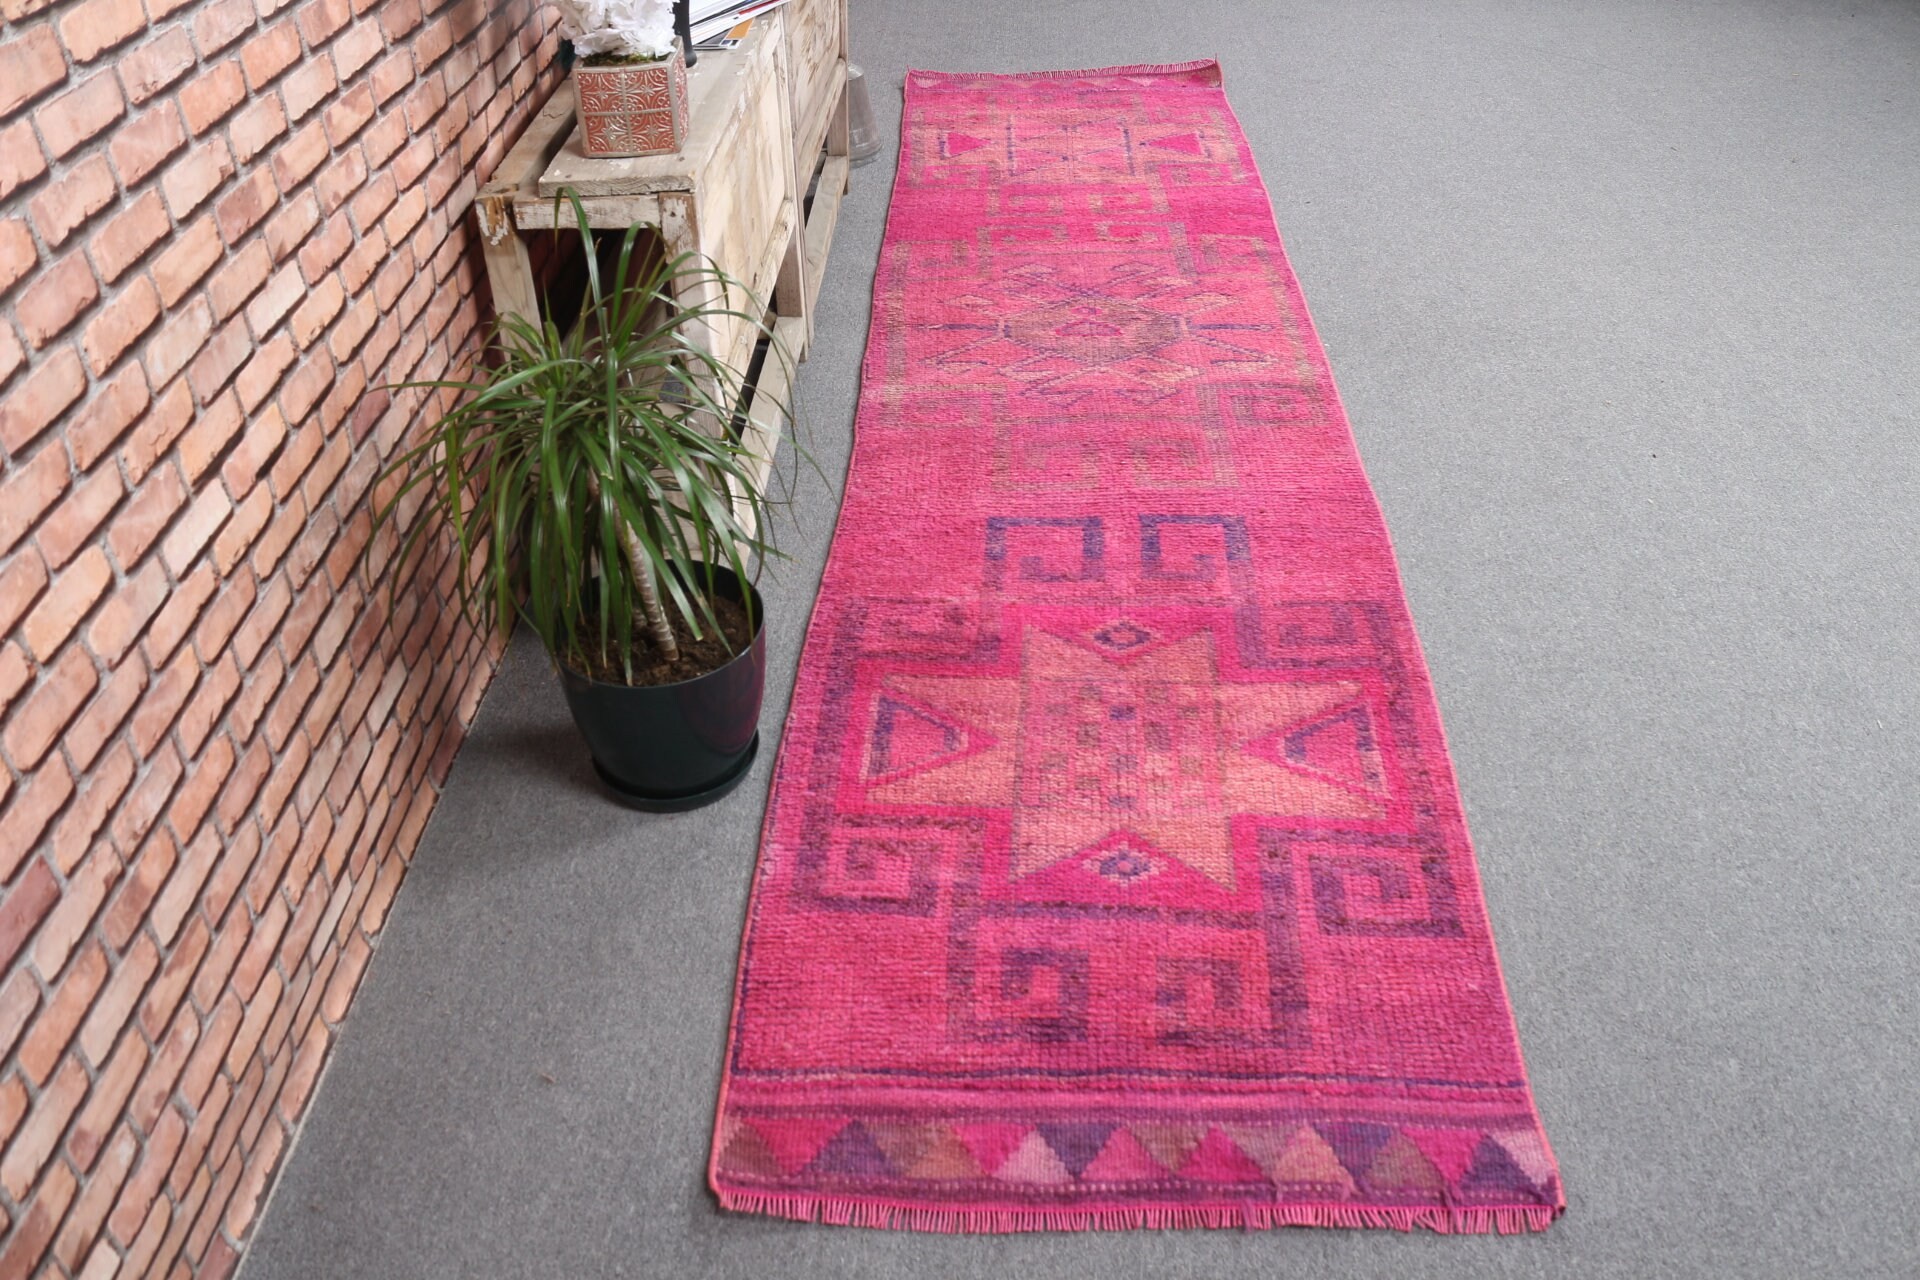 Corridor Rugs, Vintage Rug, 2.6x10.8 ft Runner Rug, Rugs for Kitchen, Stair Rug, Turkish Rugs, Floor Rug, Pink Anatolian Rug